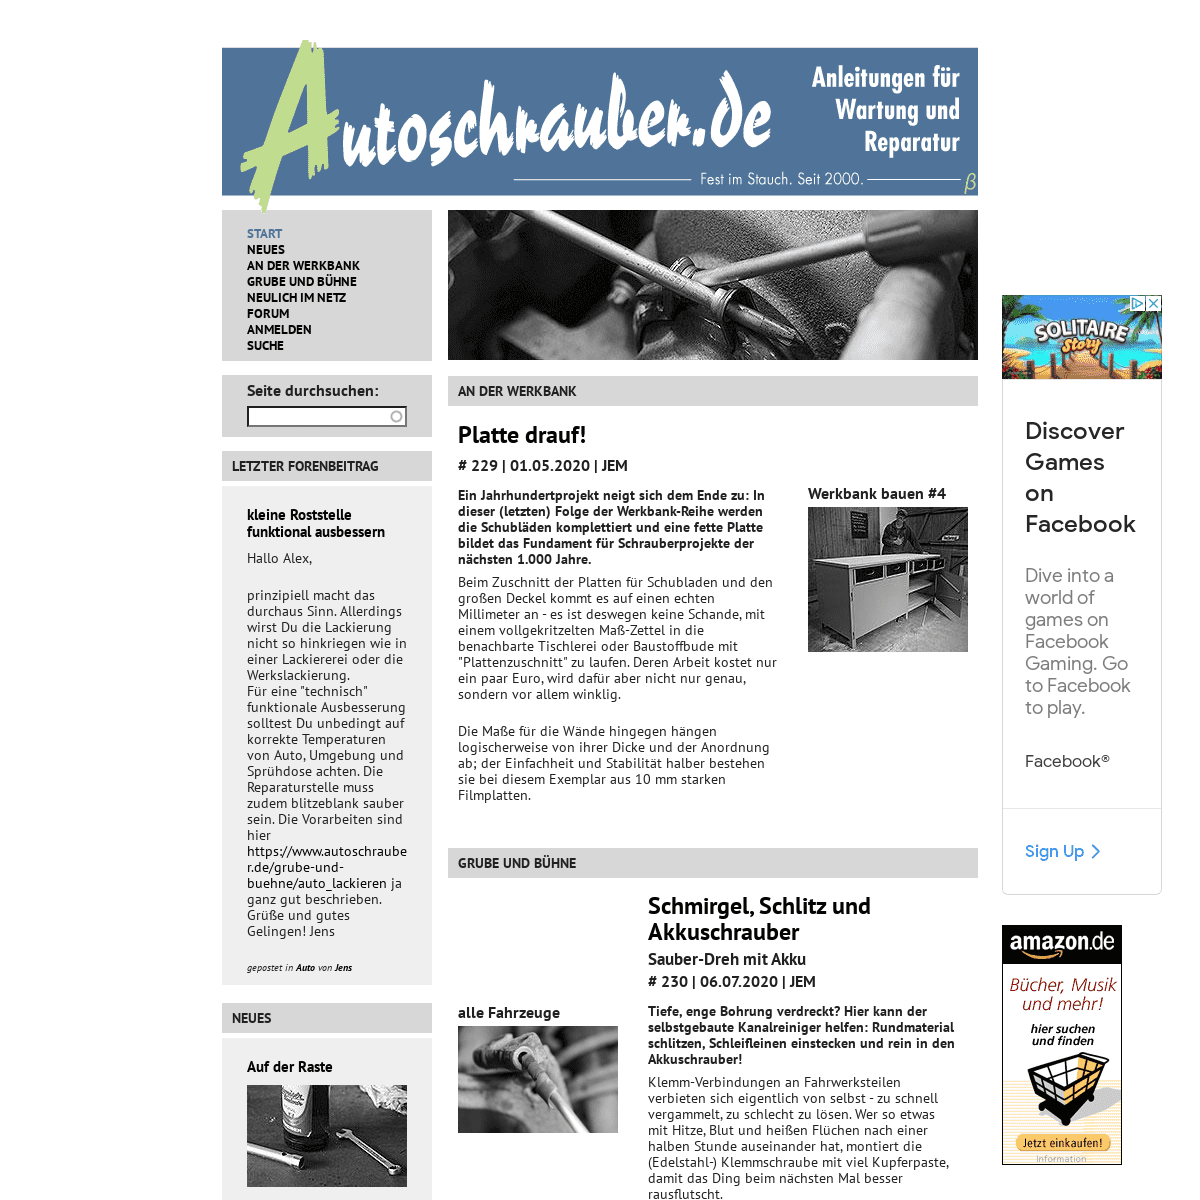 A complete backup of https://autoschrauber.de